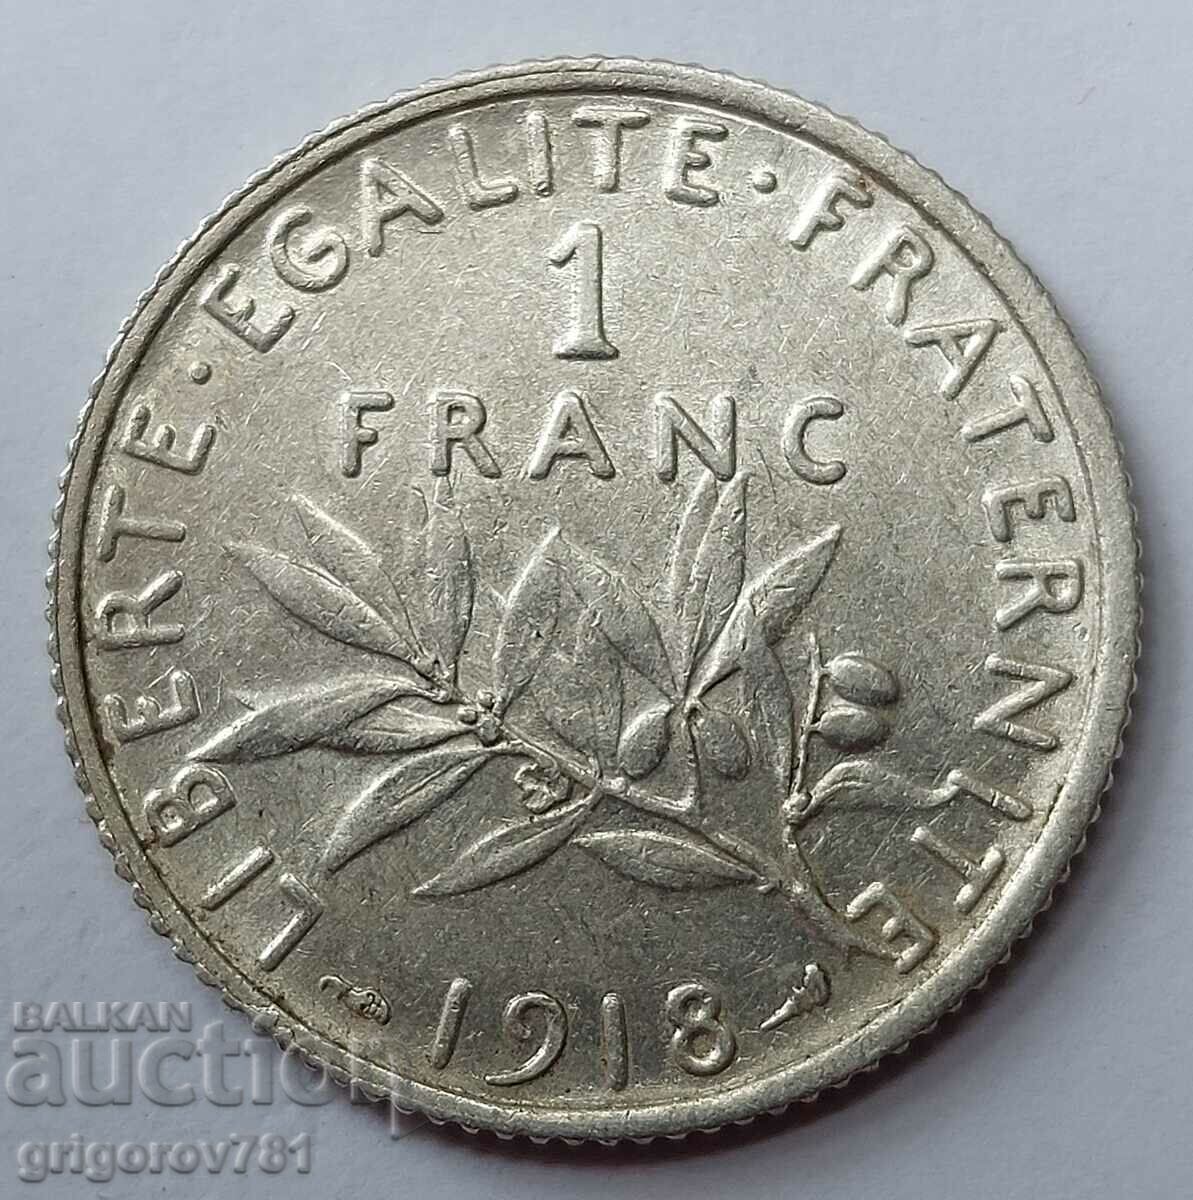 Ασημένιο 1 φράγκου Γαλλία 1918 - ασημένιο νόμισμα №21